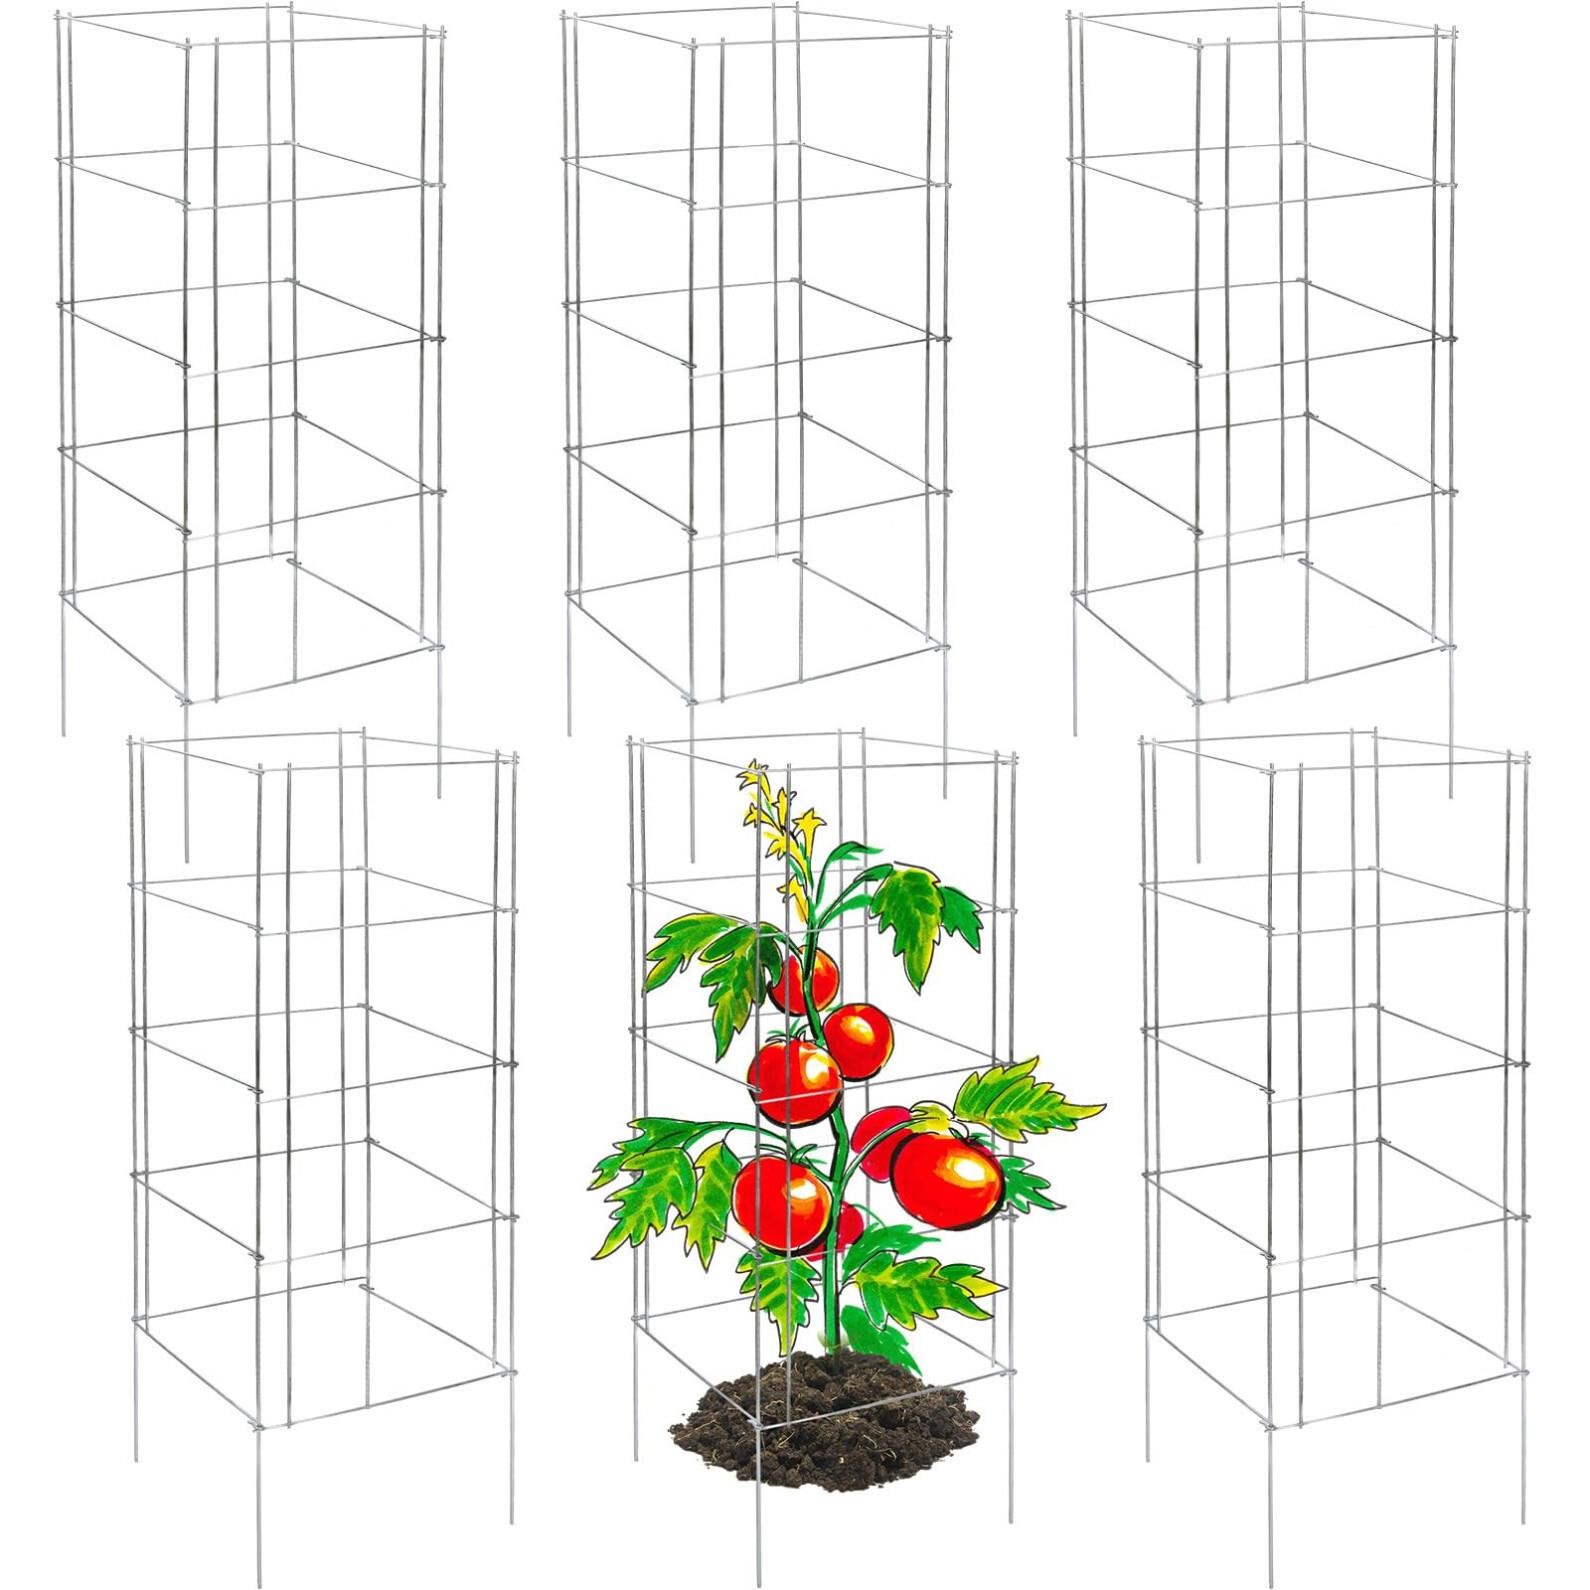 Yaocom 6 Pcs Foldable Square Tomato Cage 13" x 13